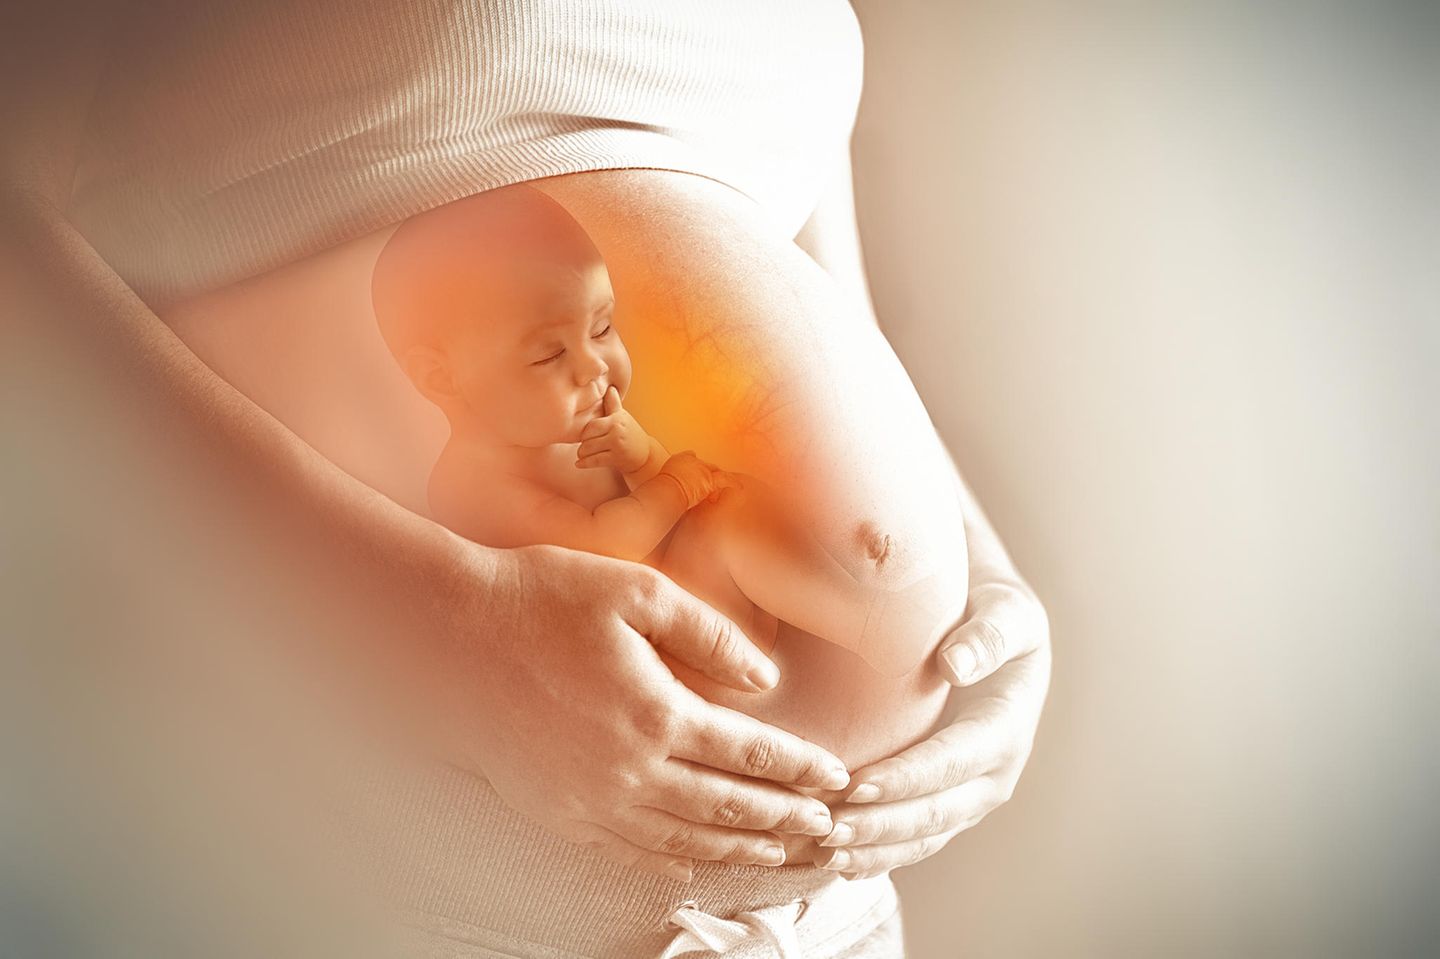 Schwangerschaft trotz spirale